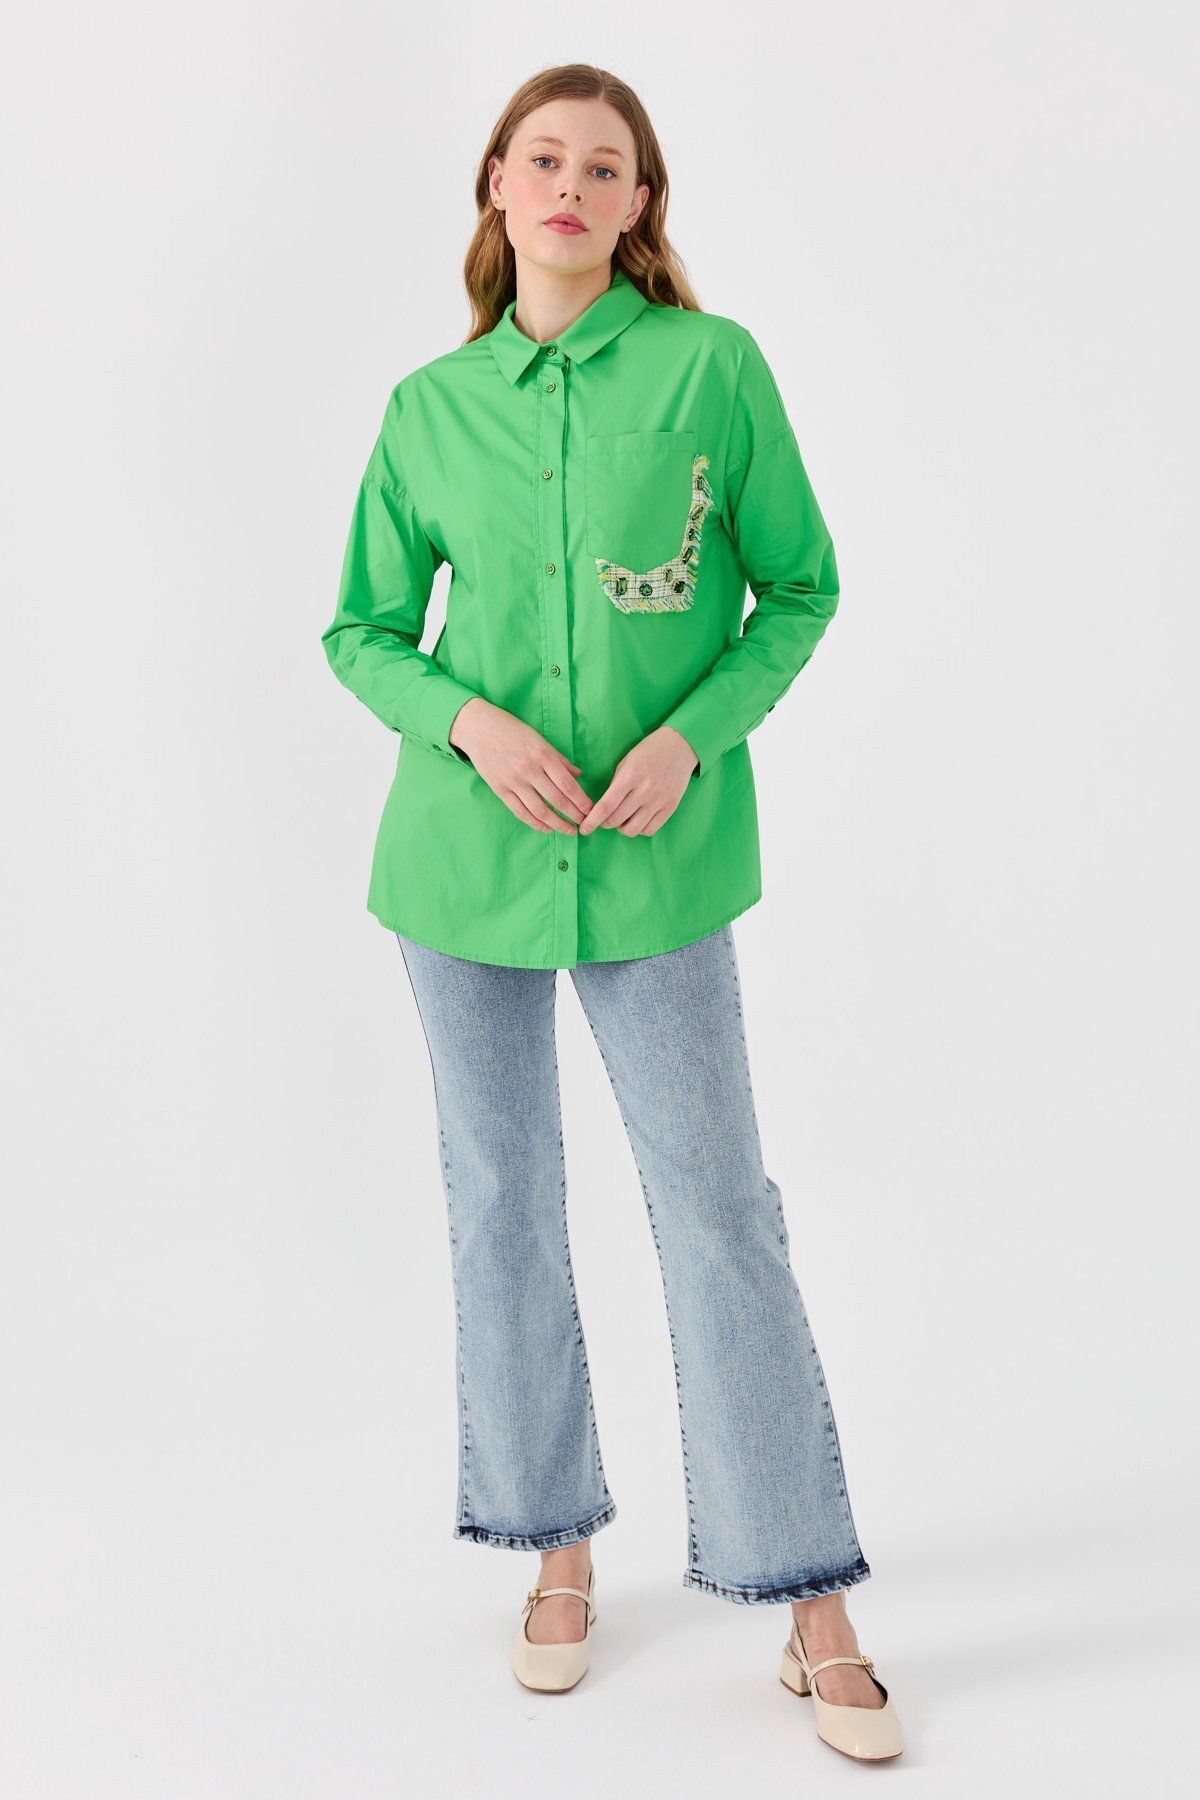 Nihan Cep Detaylı Poplin Gömlek Benetton Yeşili